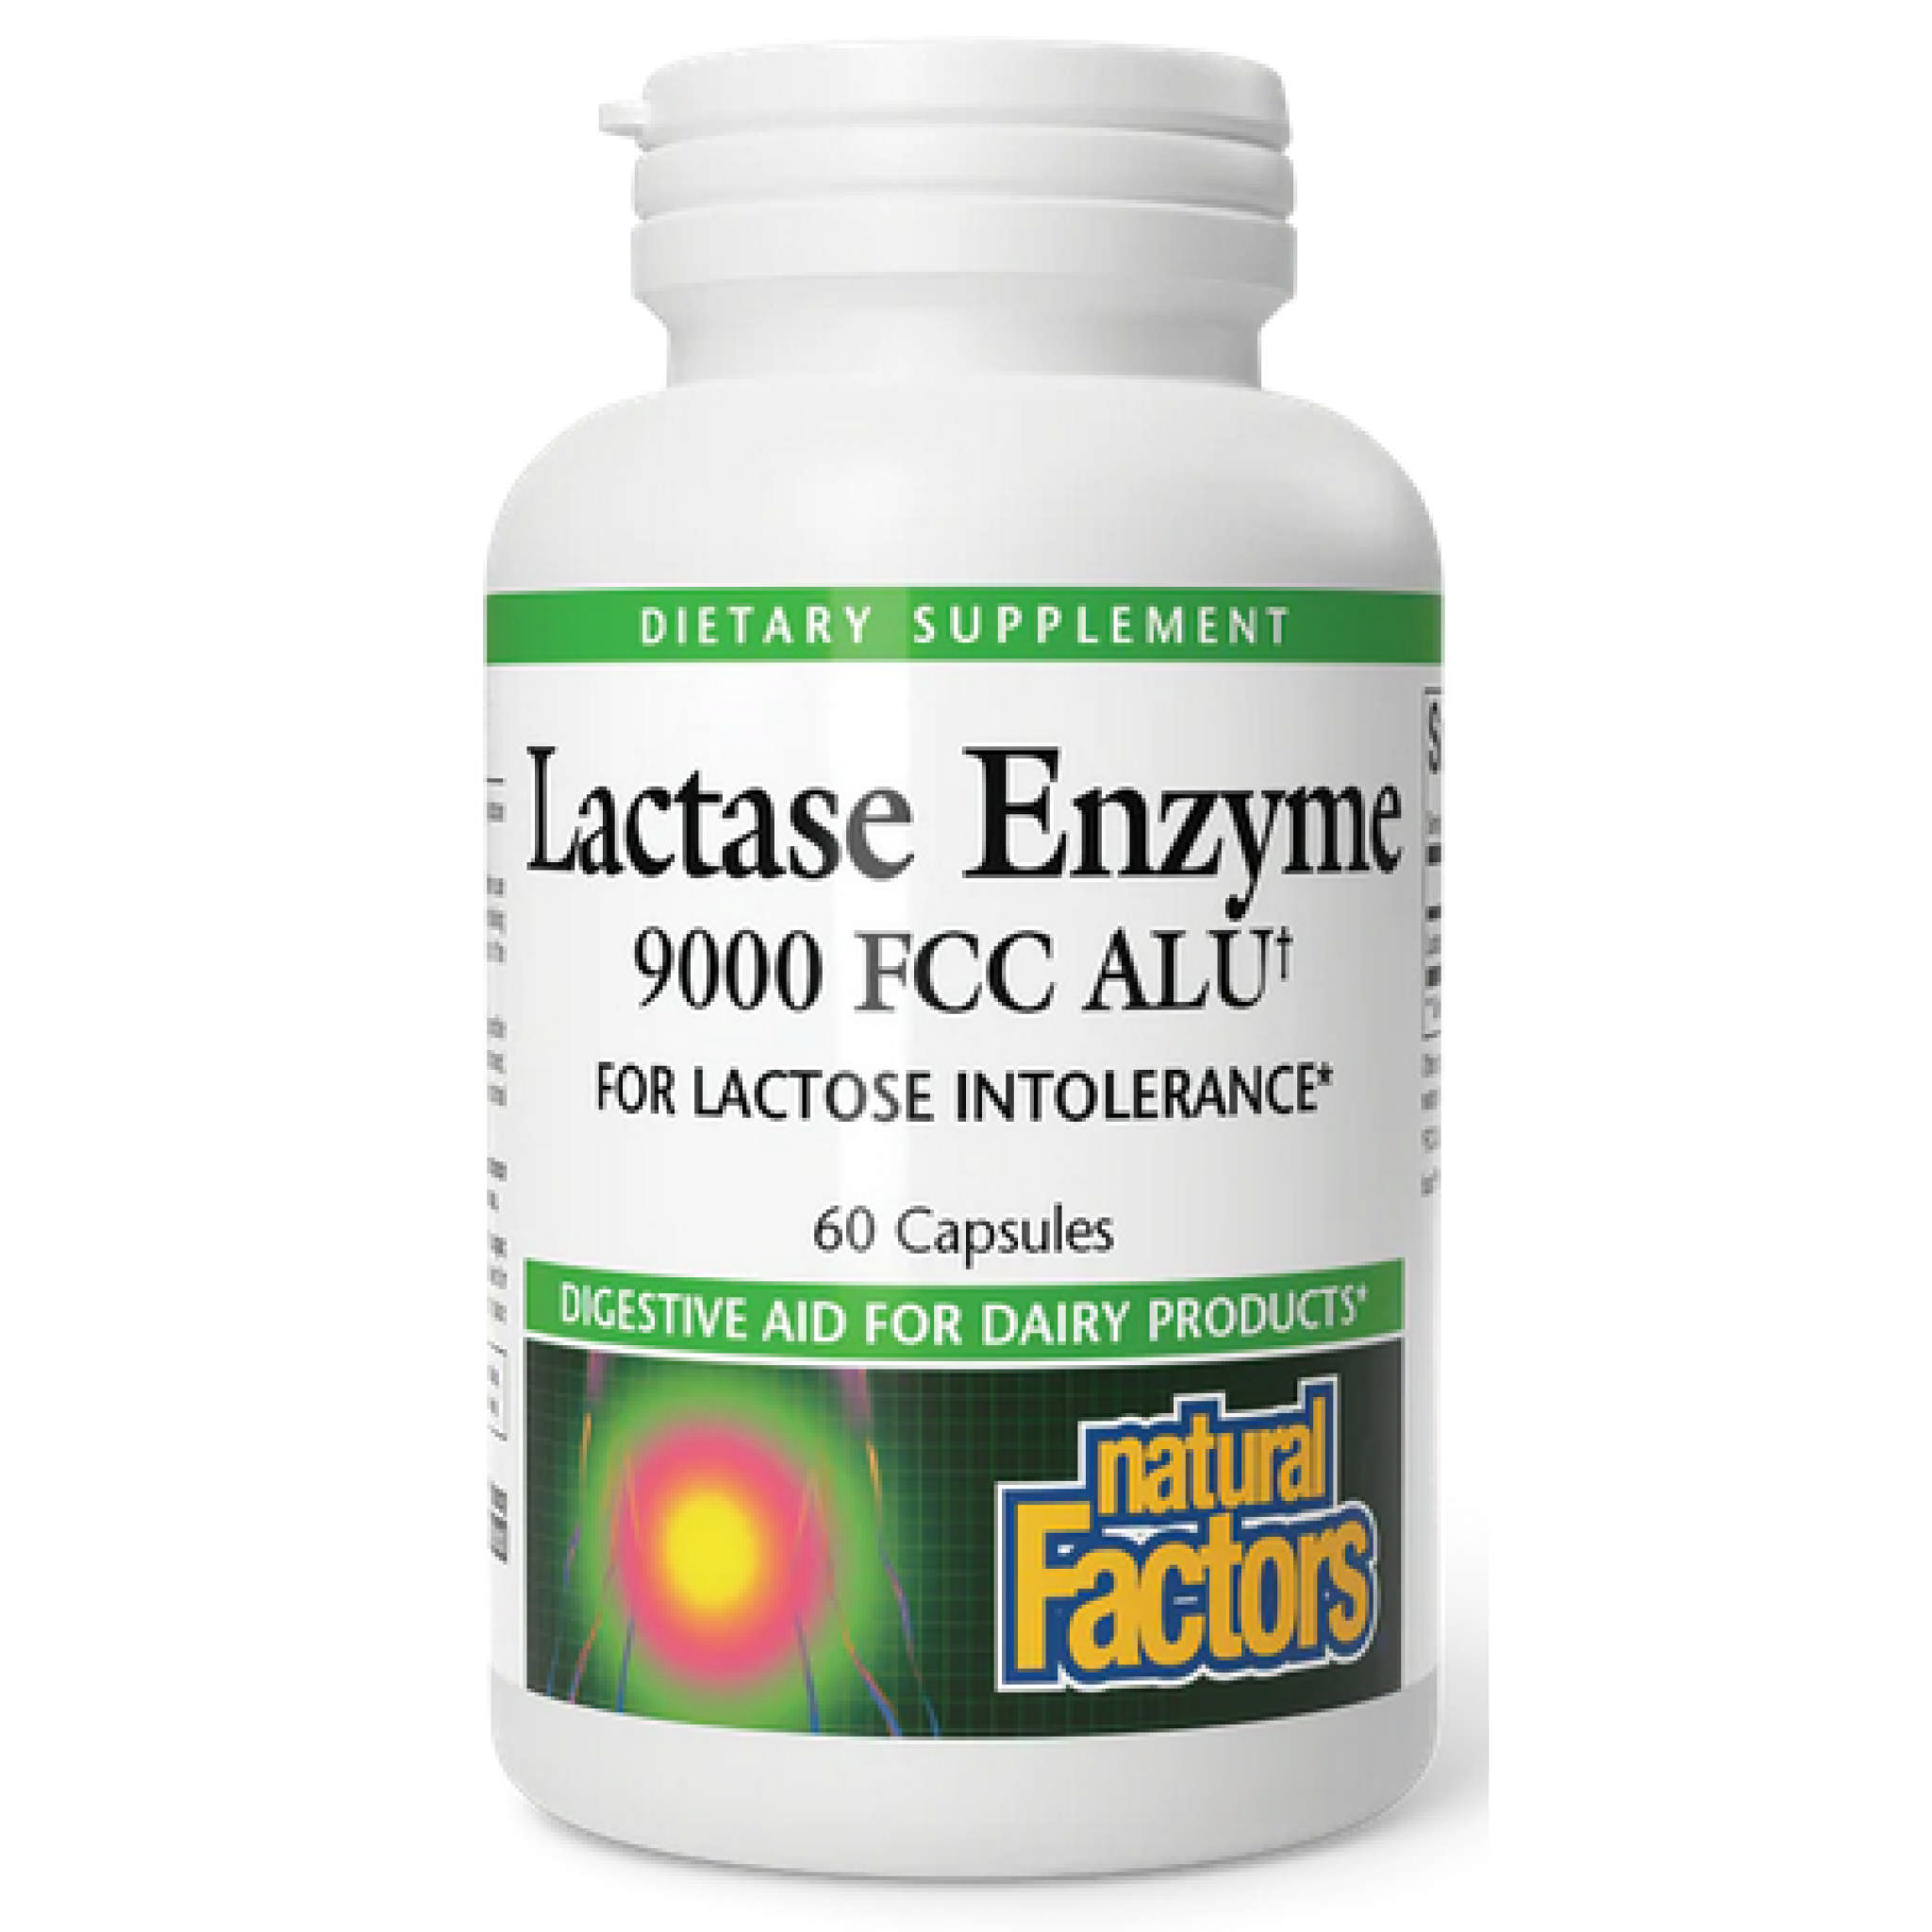 Natural Factors - Lactase Enzyme